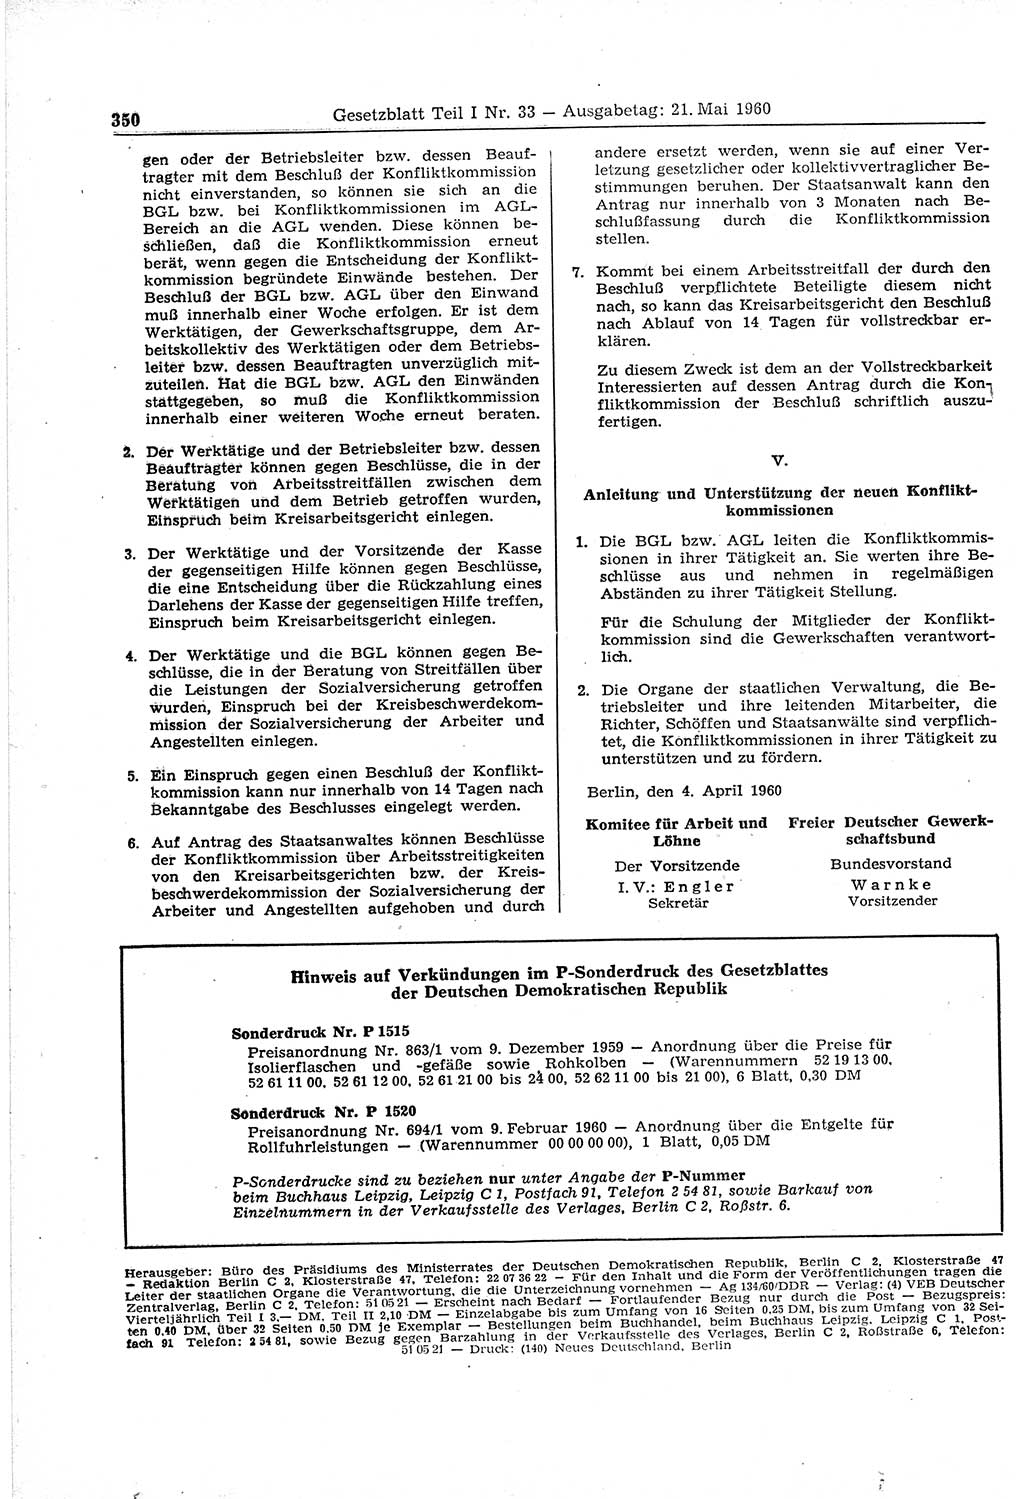 Gesetzblatt (GBl.) der Deutschen Demokratischen Republik (DDR) Teil Ⅰ 1960, Seite 350 (GBl. DDR Ⅰ 1960, S. 350)